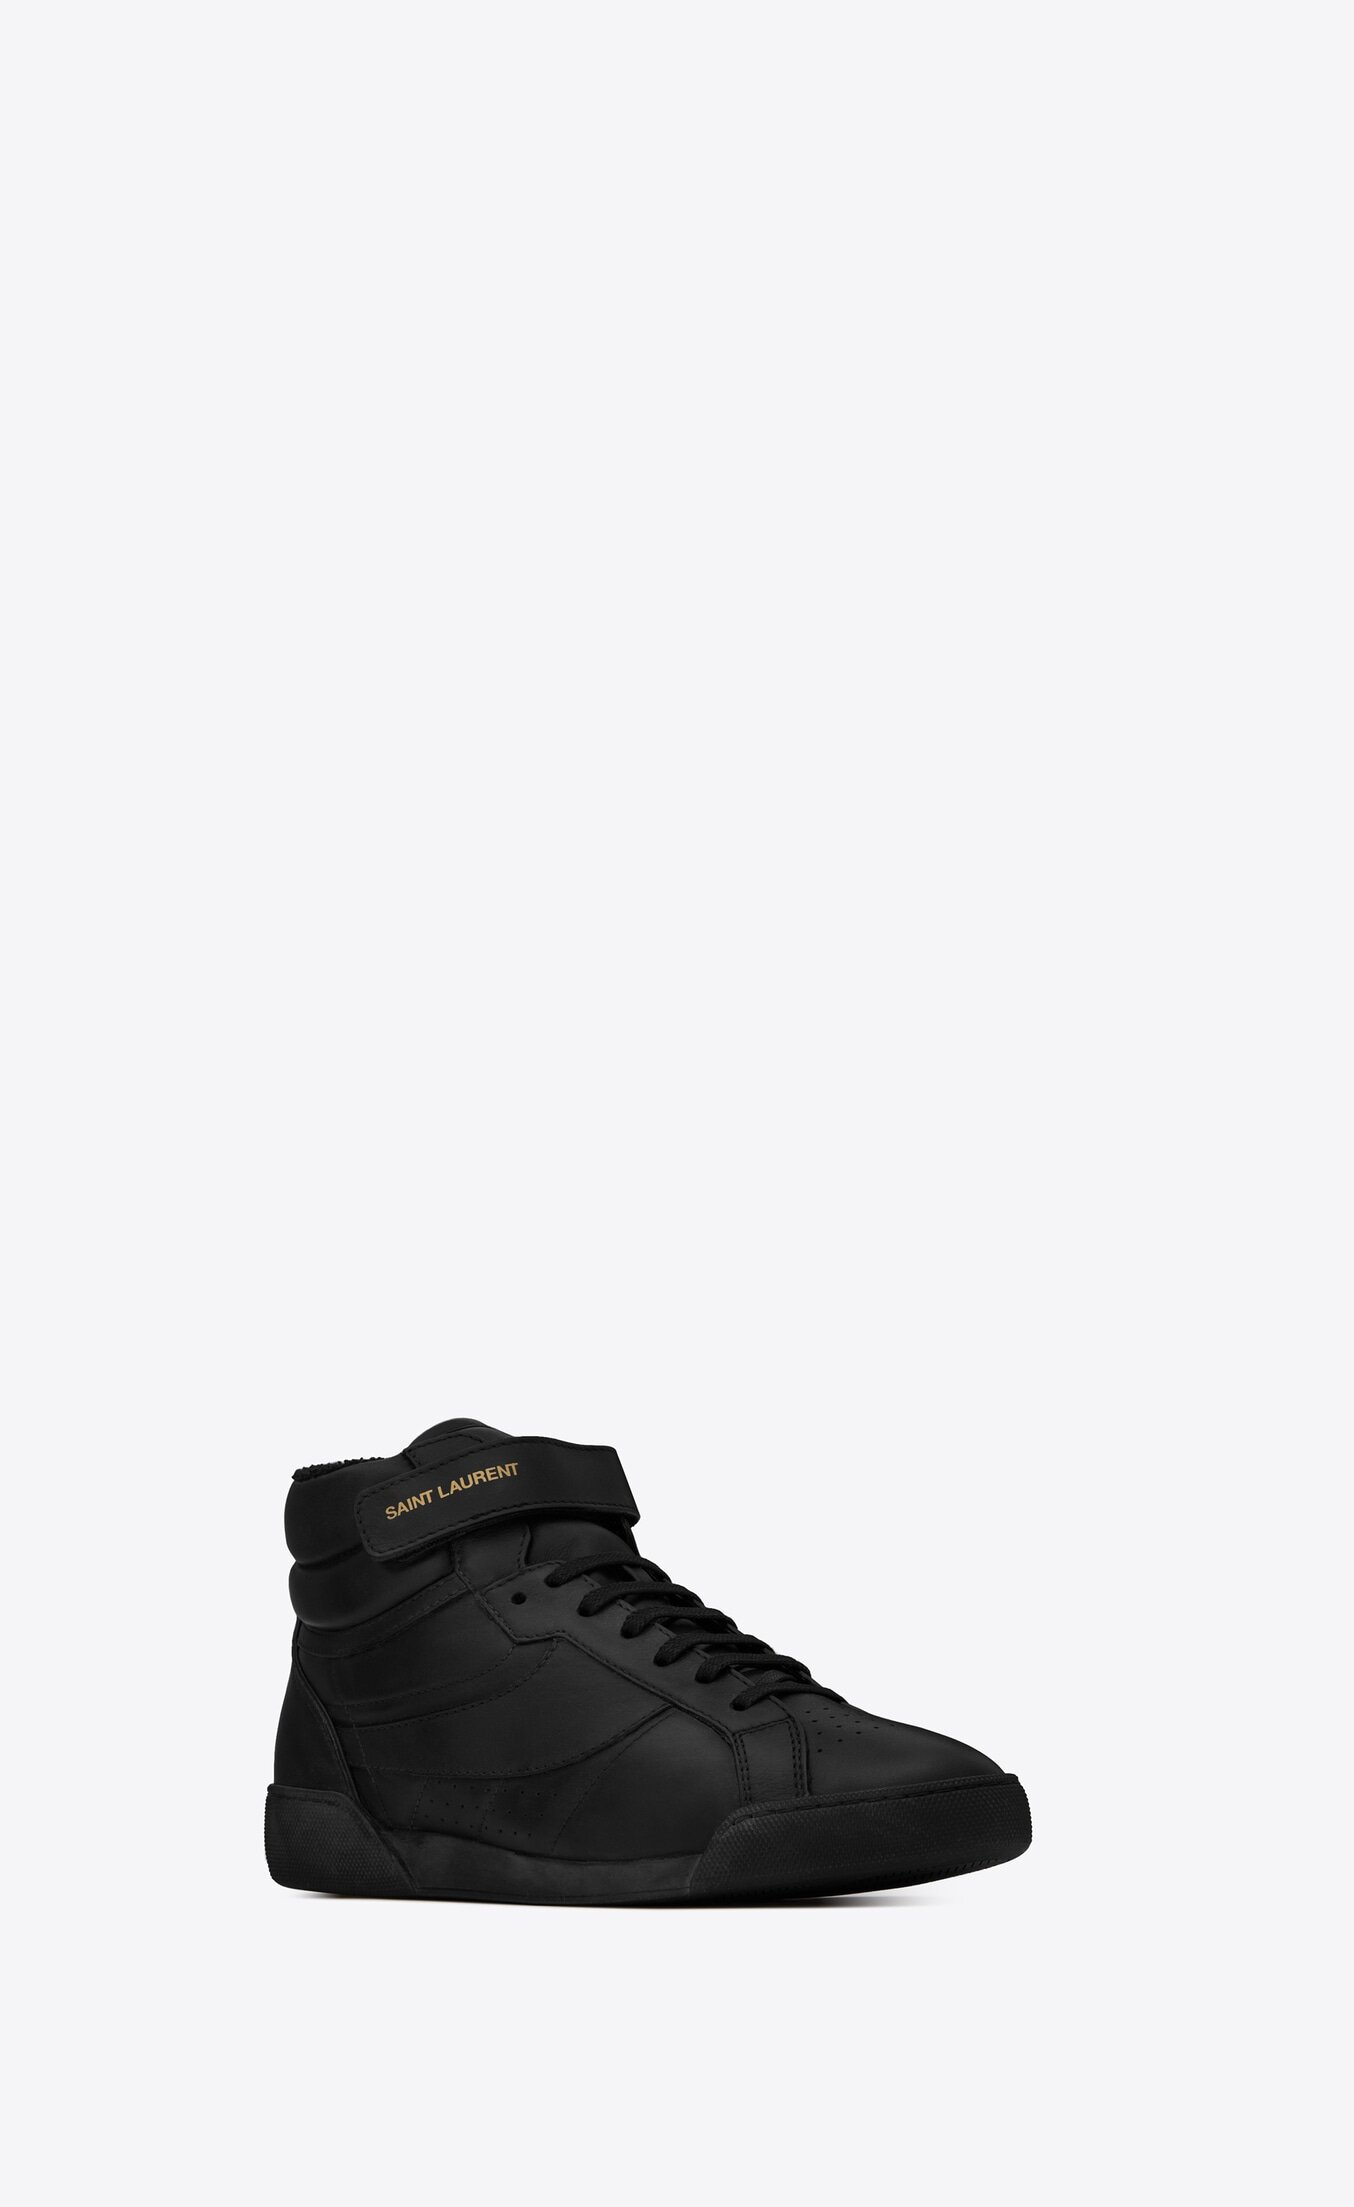 Saint Laurent Lenny Sneakers in Black Leather.jpg